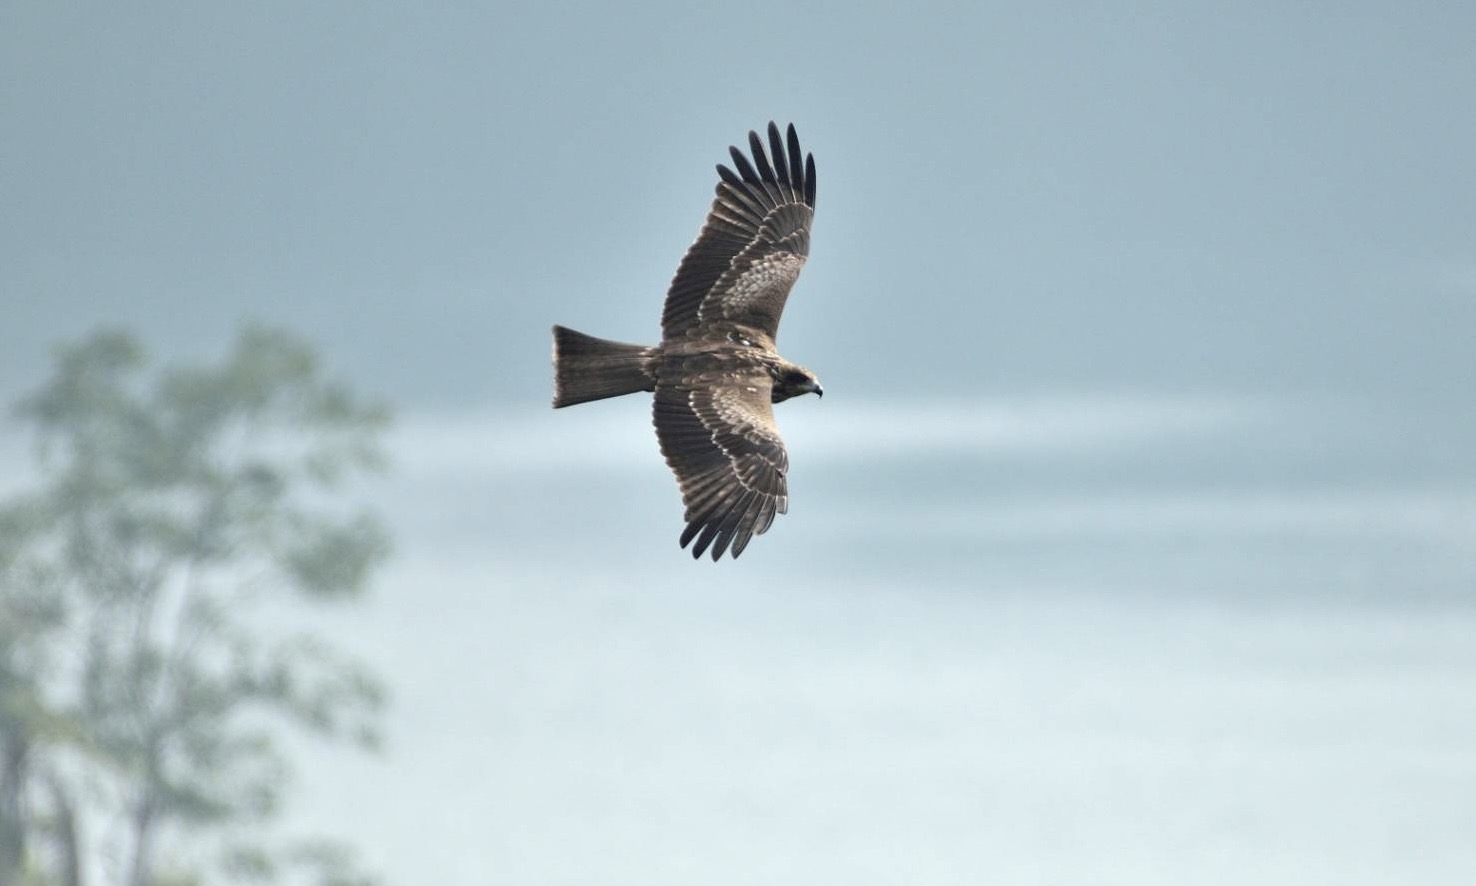 翡翠水庫老鷹數量占全台2成 珍稀鳥類的天堂棲地